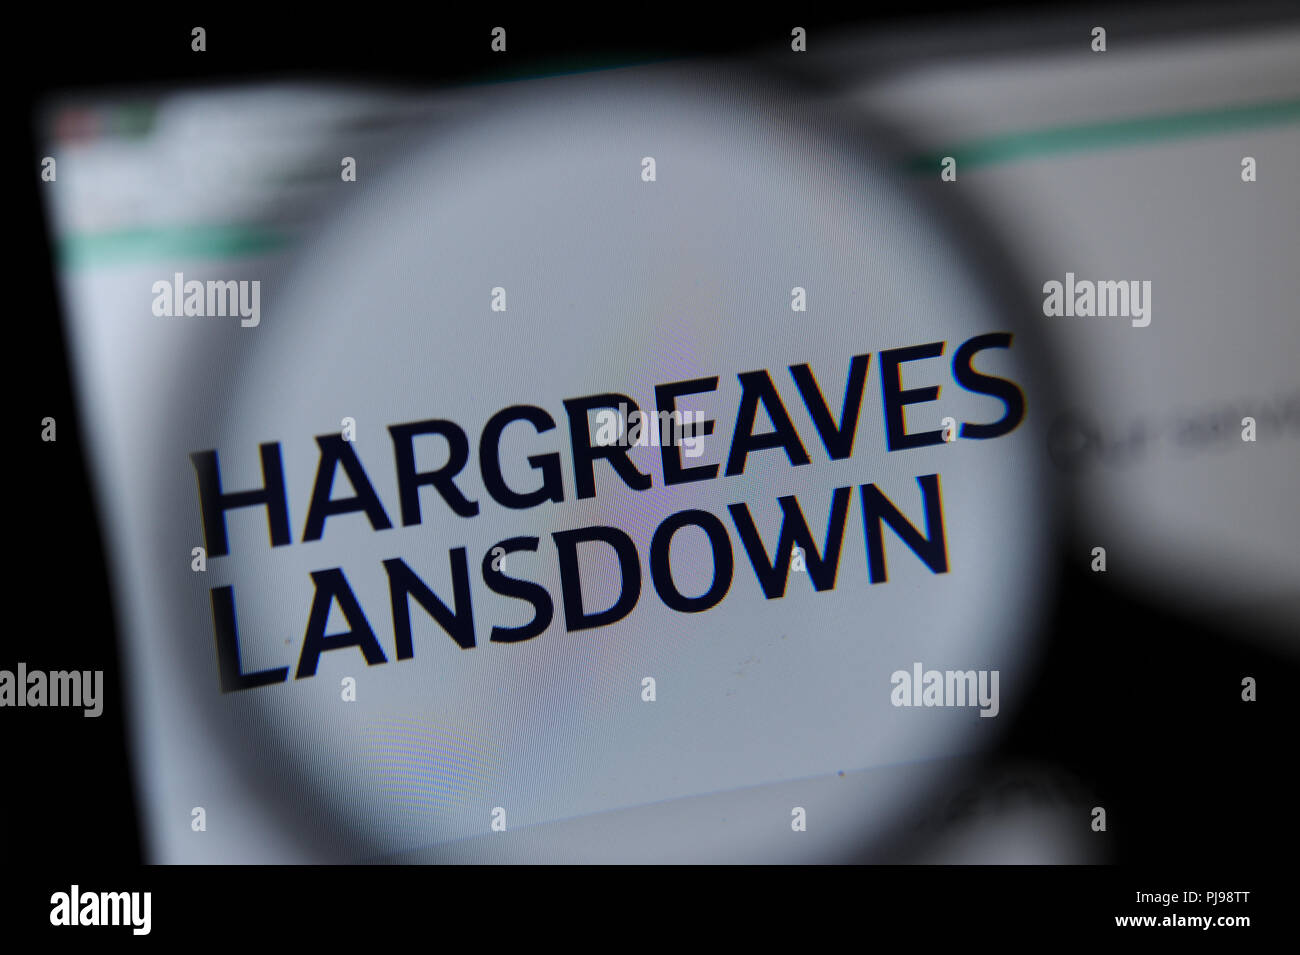 Le site web de Landsdowne Hargreaves vu à travers une loupe Banque D'Images